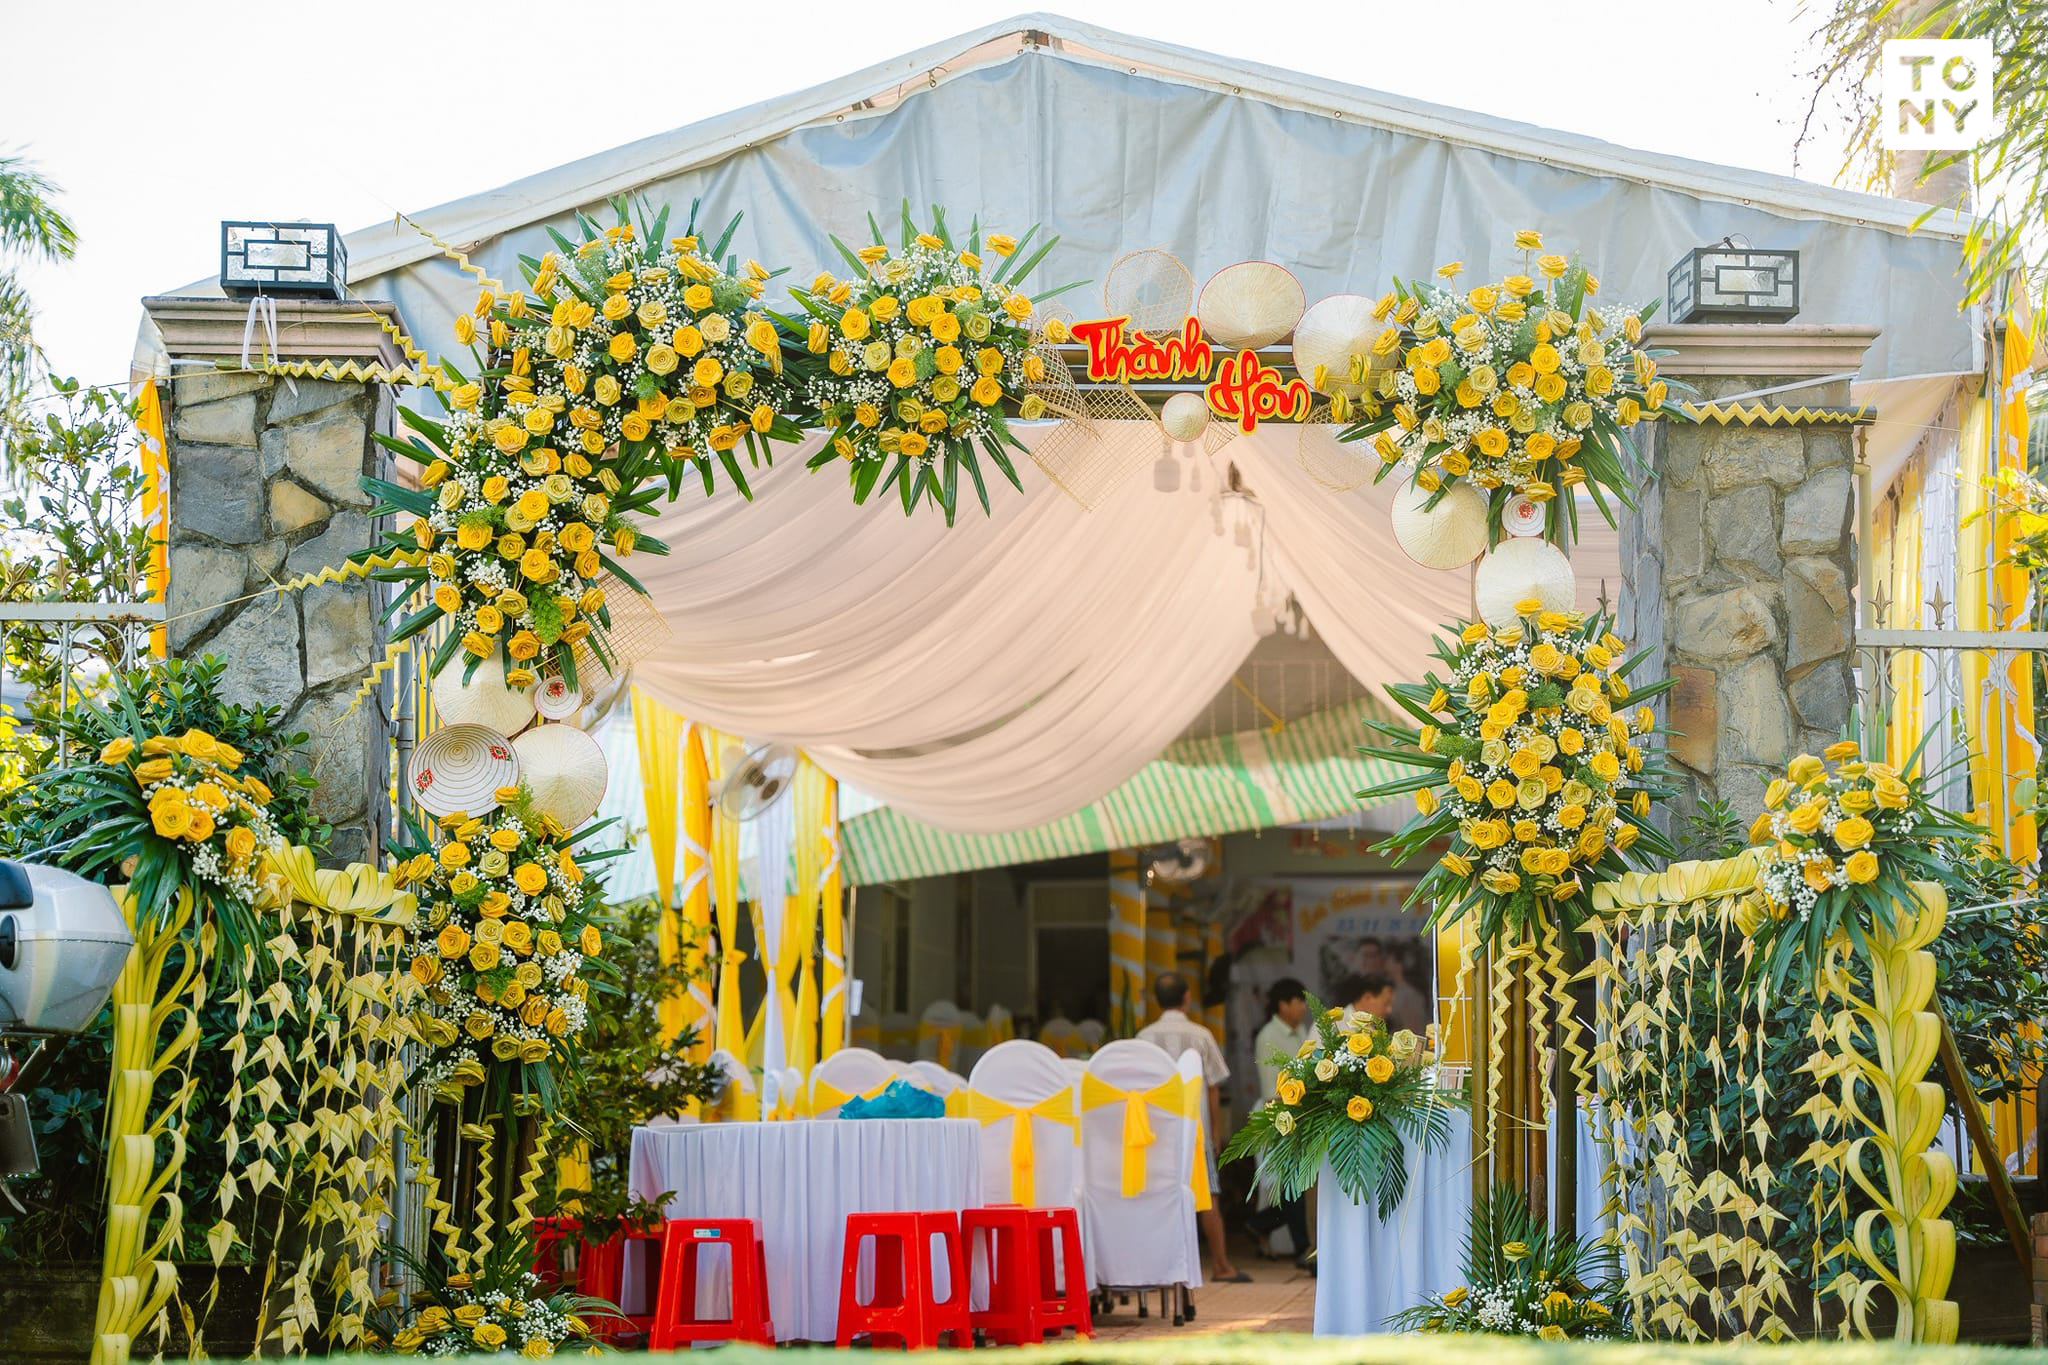 Sáng tạo xanh: Những mẫu cổng hoa đám cưới bằng lá dừa thấy đơn giản nhưng  đòi sự tinh tế trong thiết kế | Đám cưới, Hình ảnh, Thiết kế